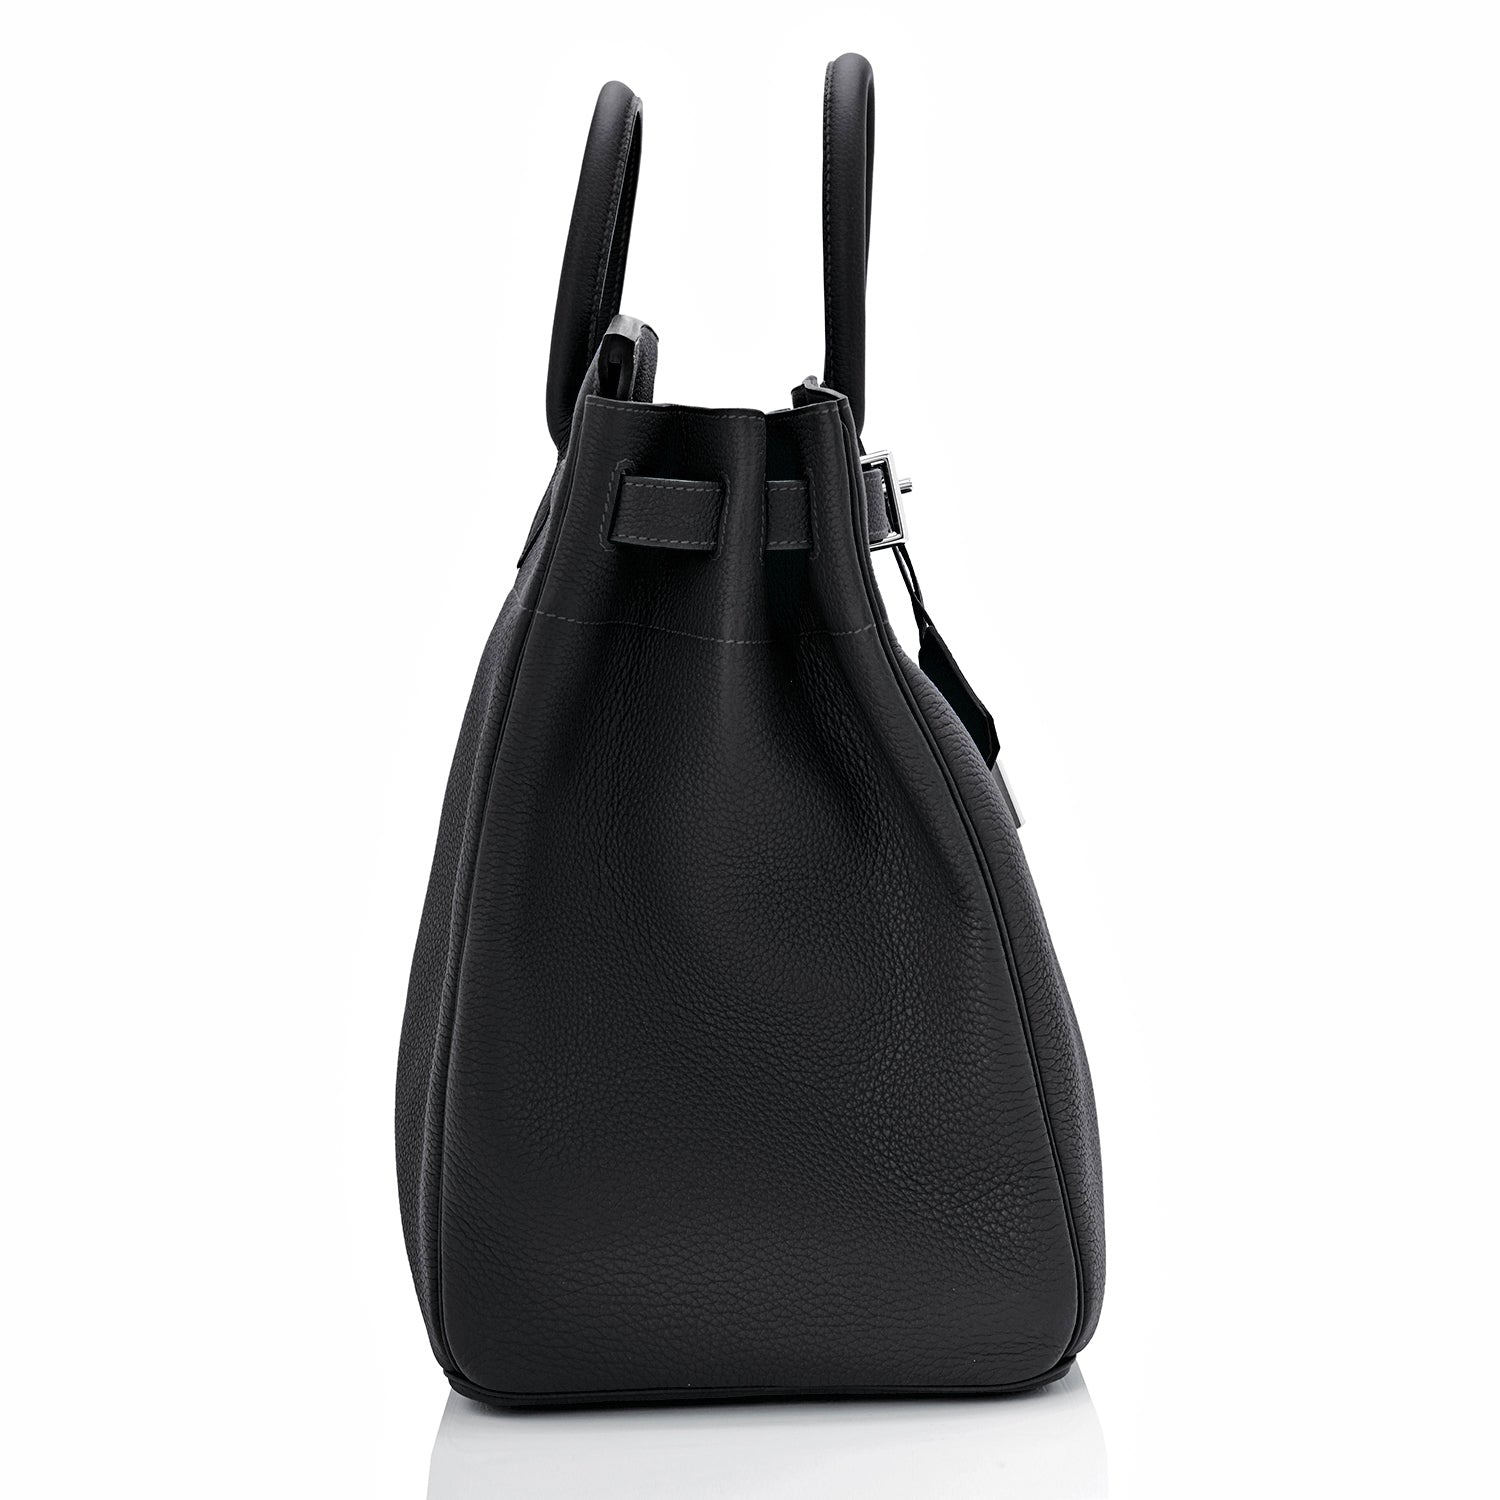 🗝️ Hermès 50cm Birkin HAC Black Togo Leather Palladium Hardware